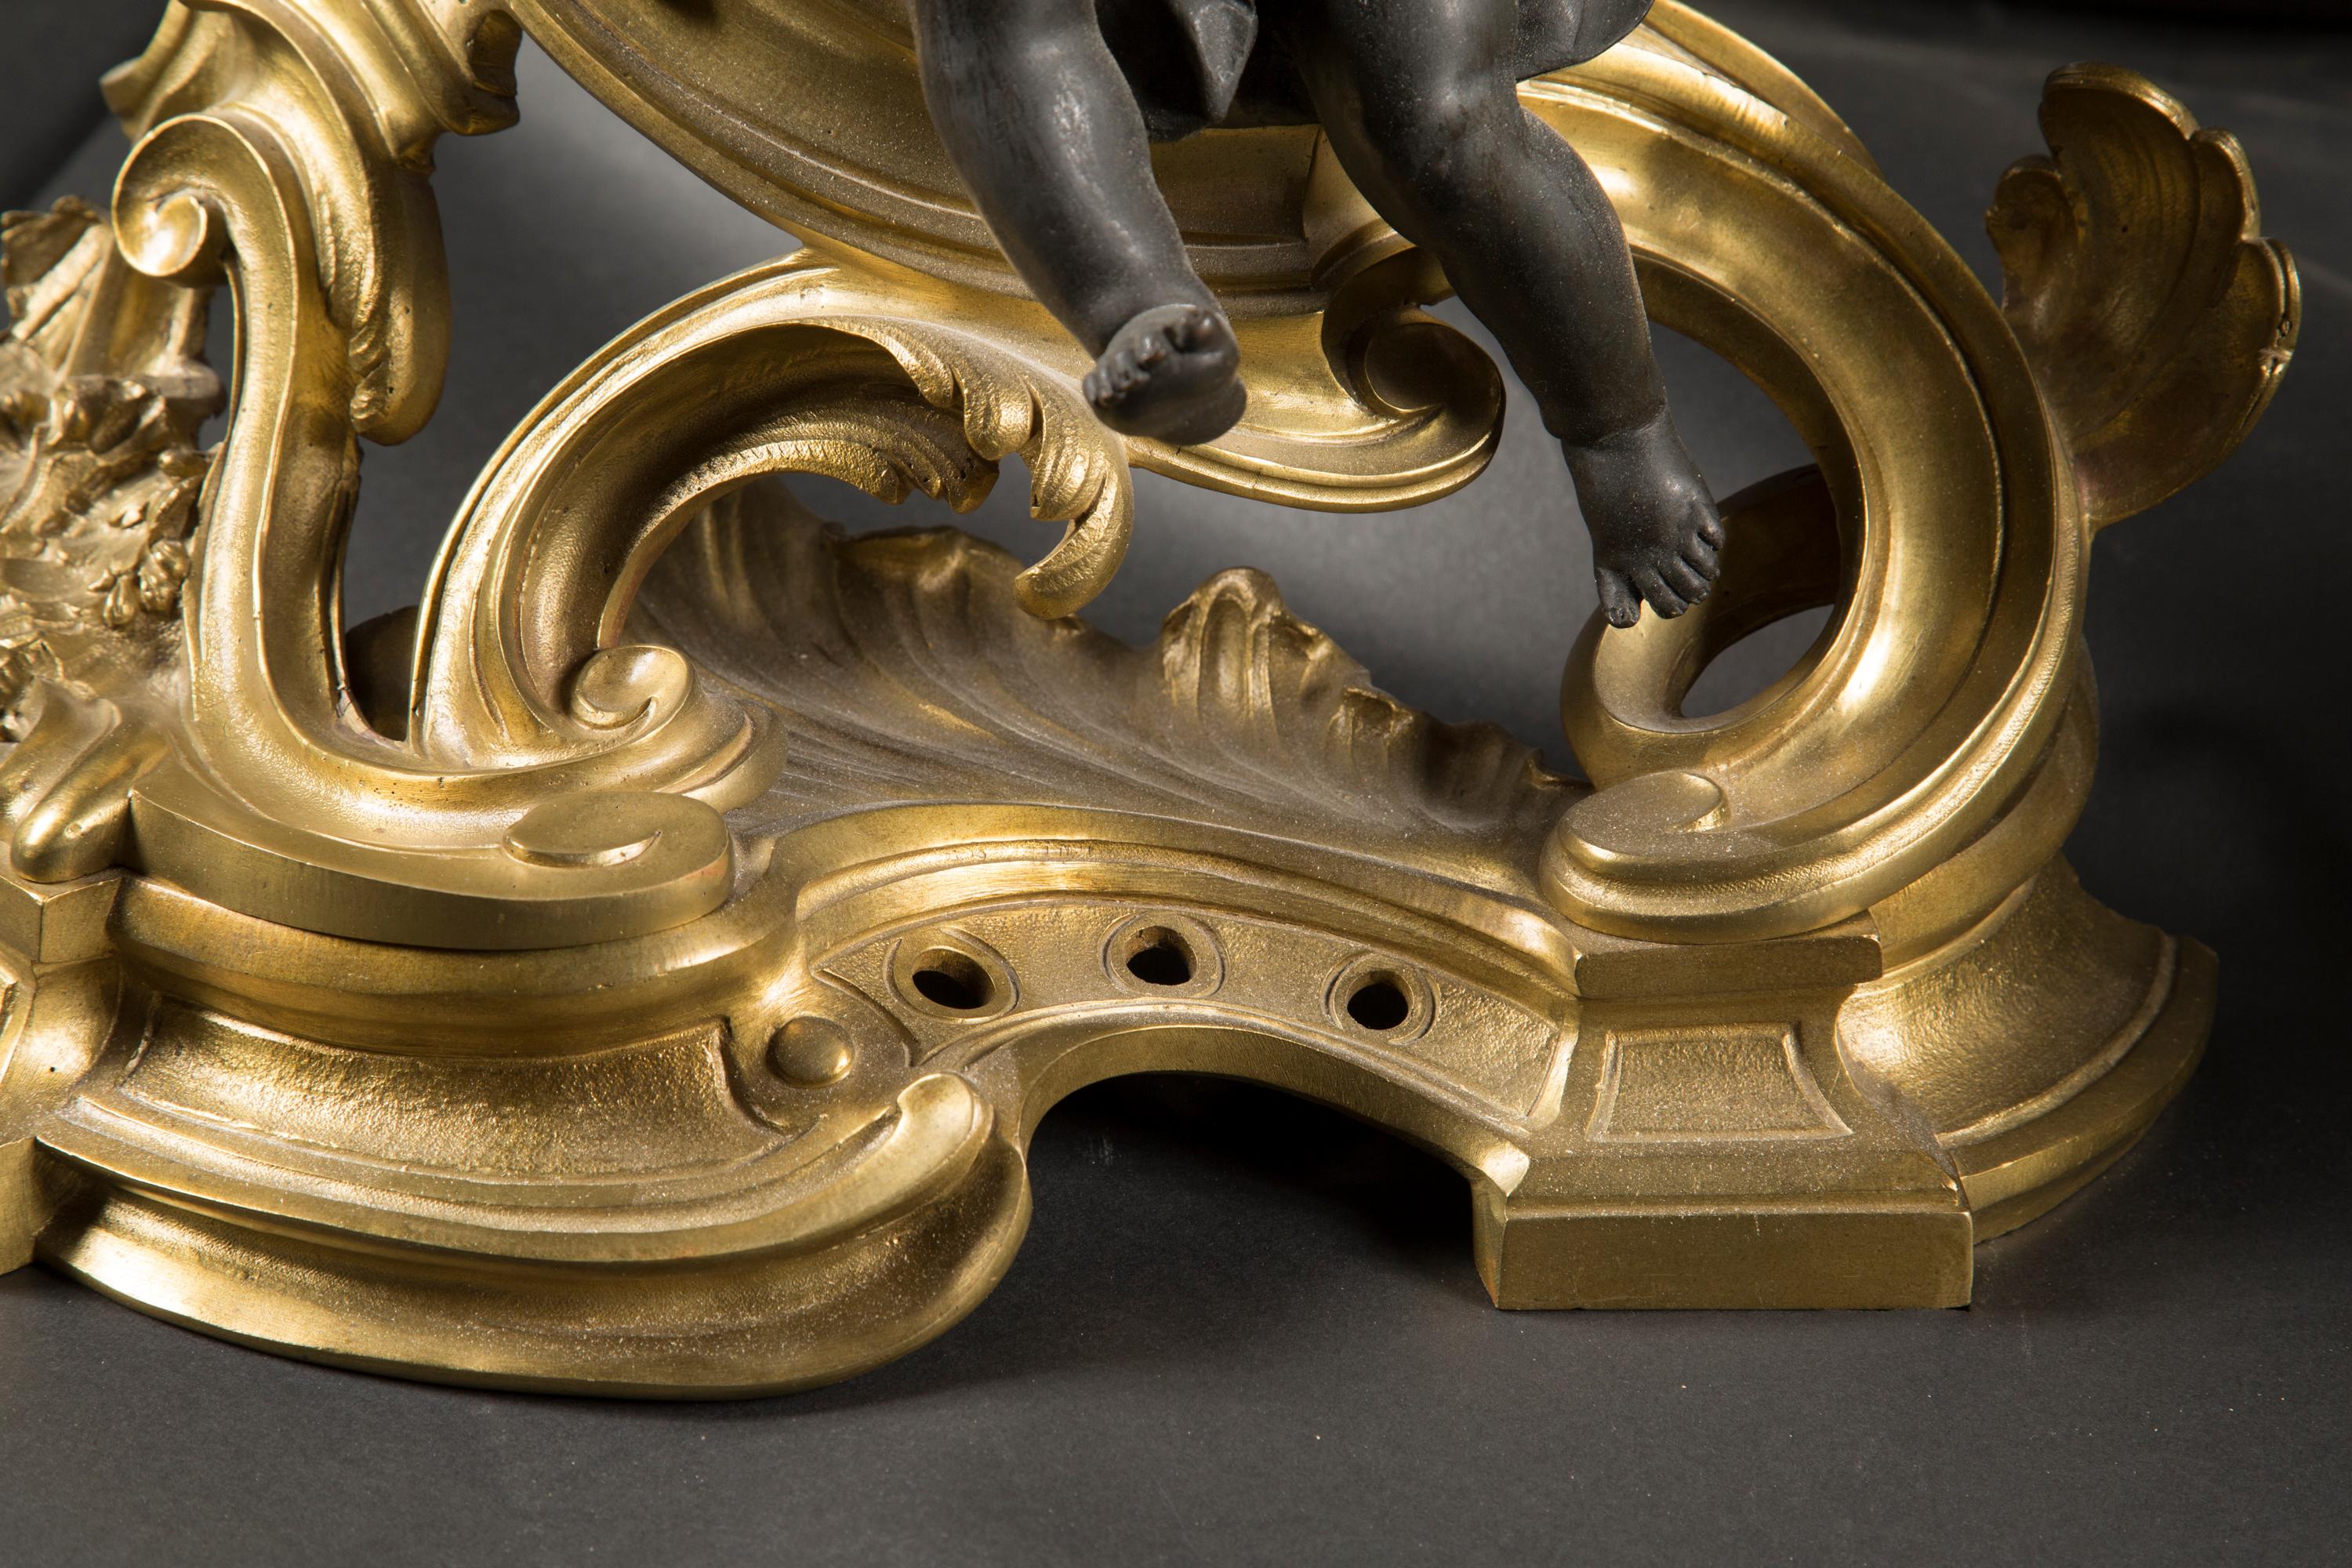 Cette magnifique paire de chenets en bronze de style Louis XV date du XIXe siècle. Elles présentent des putti en bronze patiné, également appelés chérubins, qui reposent sur de magnifiques d'ore en bronze coulés de façon immaculée. Les chérubins